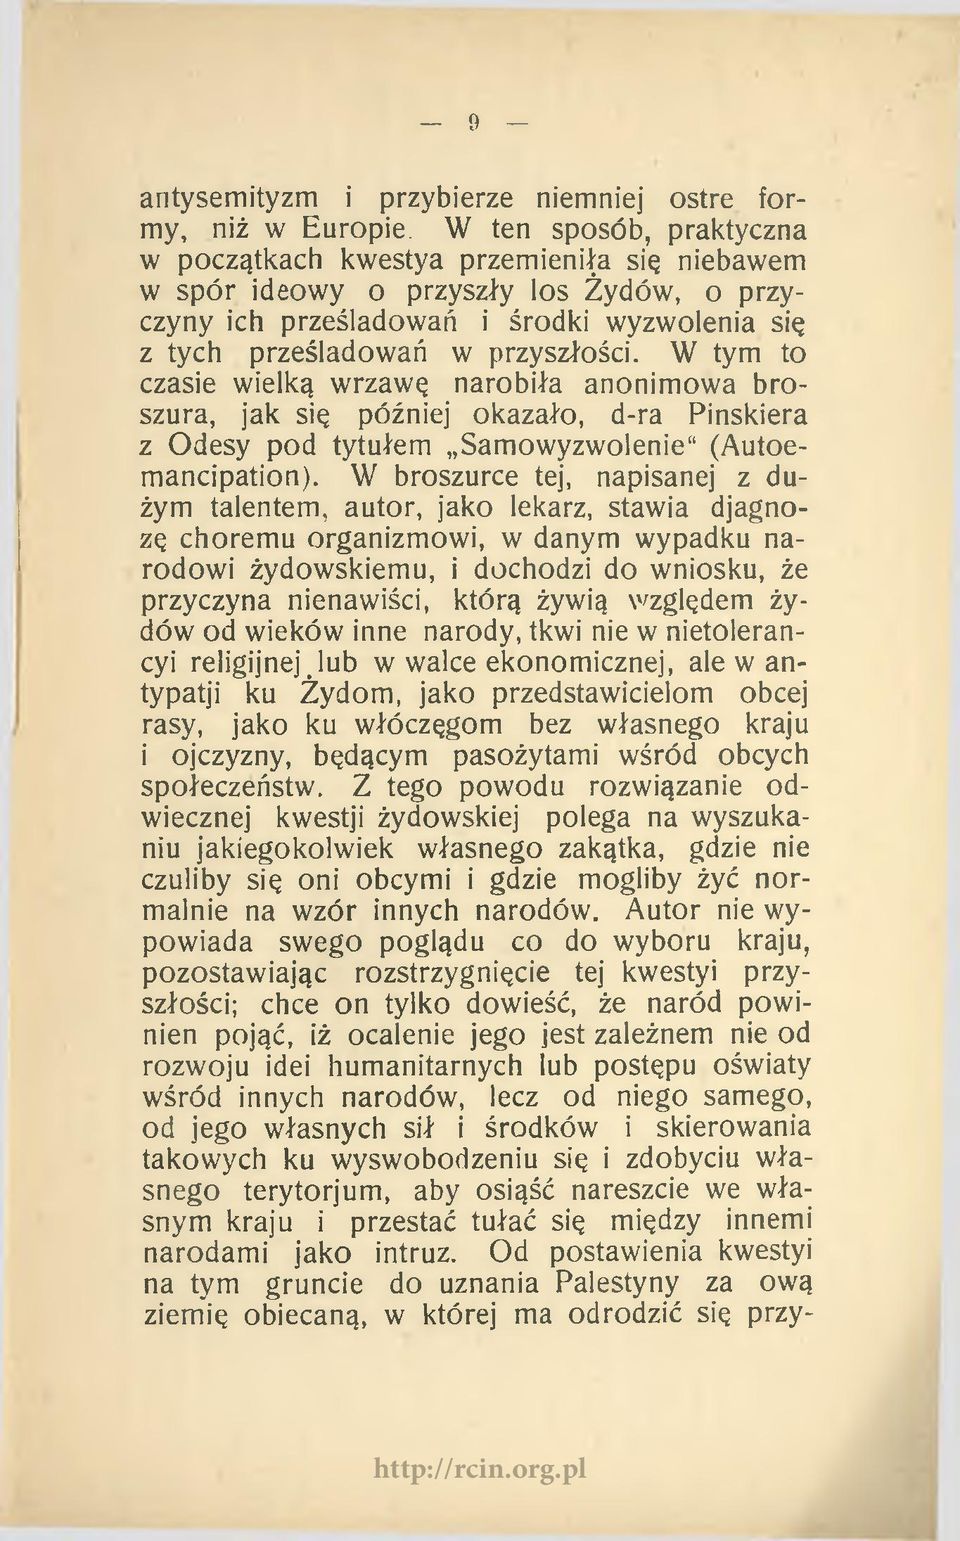 W tym to czasie wielką wrzawę narobiła anonimowa broszura, jak się później okazało, d-ra Pinskiera z Odesy pod tytułem Samowyzwolenie (Autoemancipation).